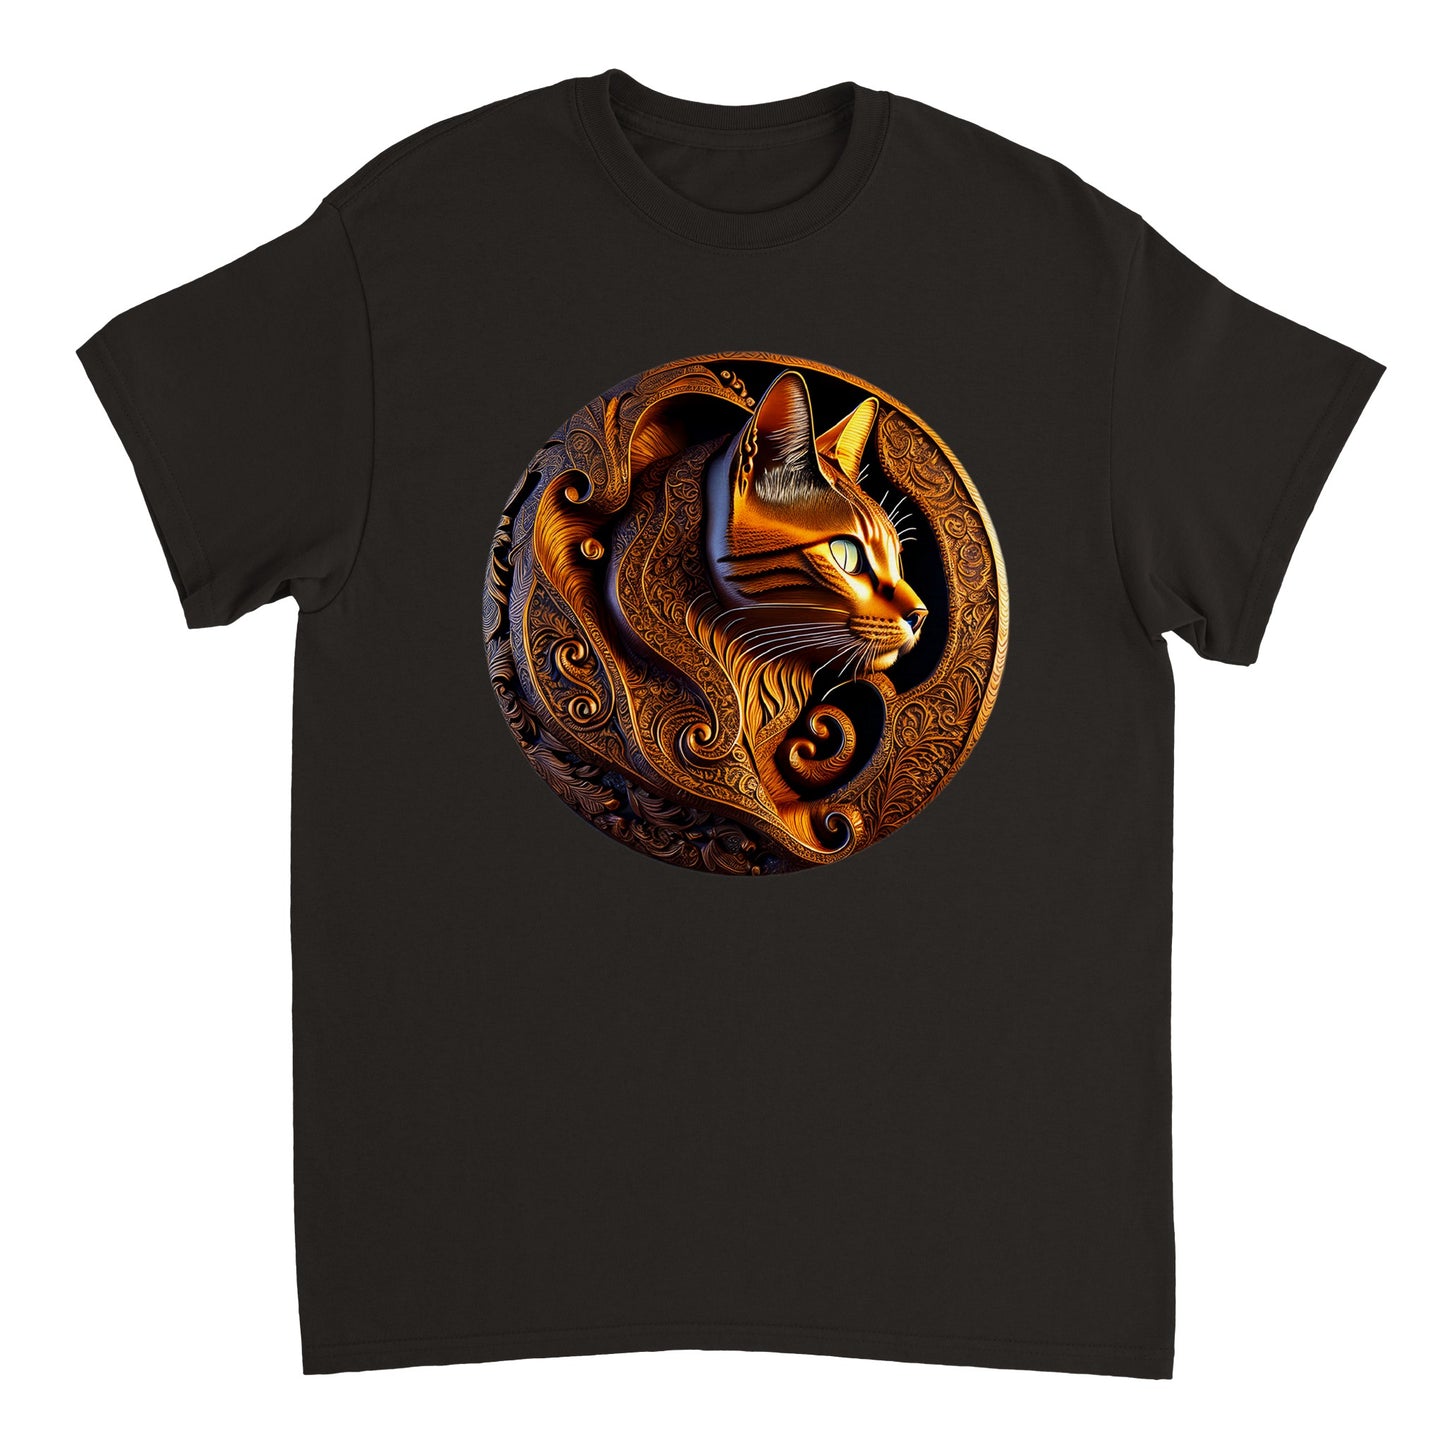 3D Wooden Animal Art - Heavyweight Unisex Crewneck T-shirt 1